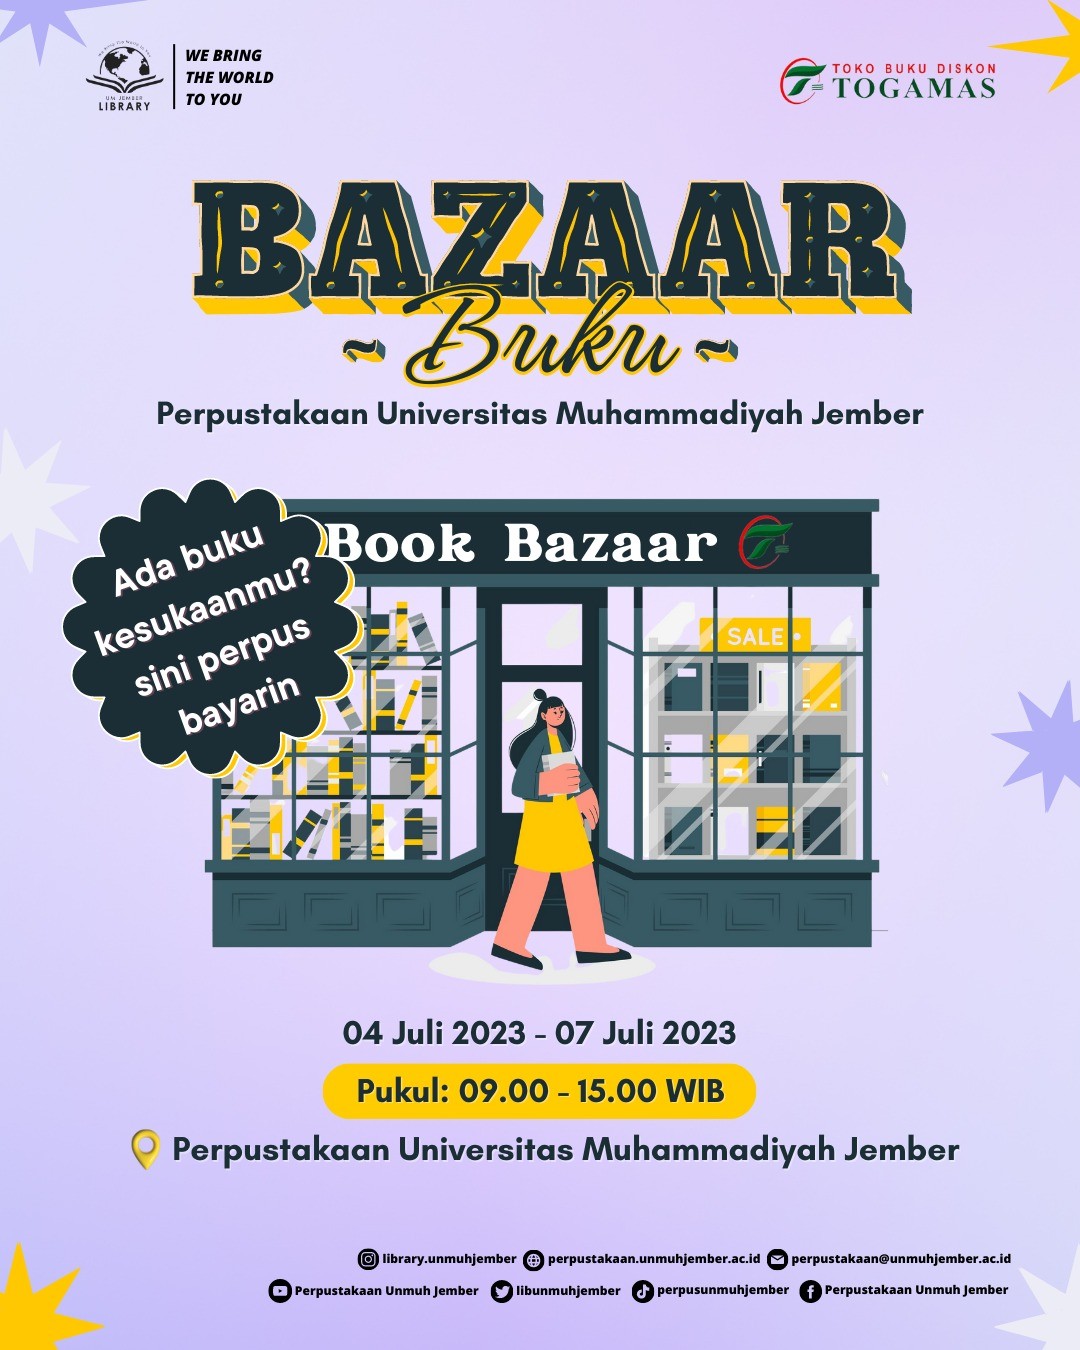 UPT Perpustakaan Universitas Muhammadiyah Jember mengadakan Bazar Buku